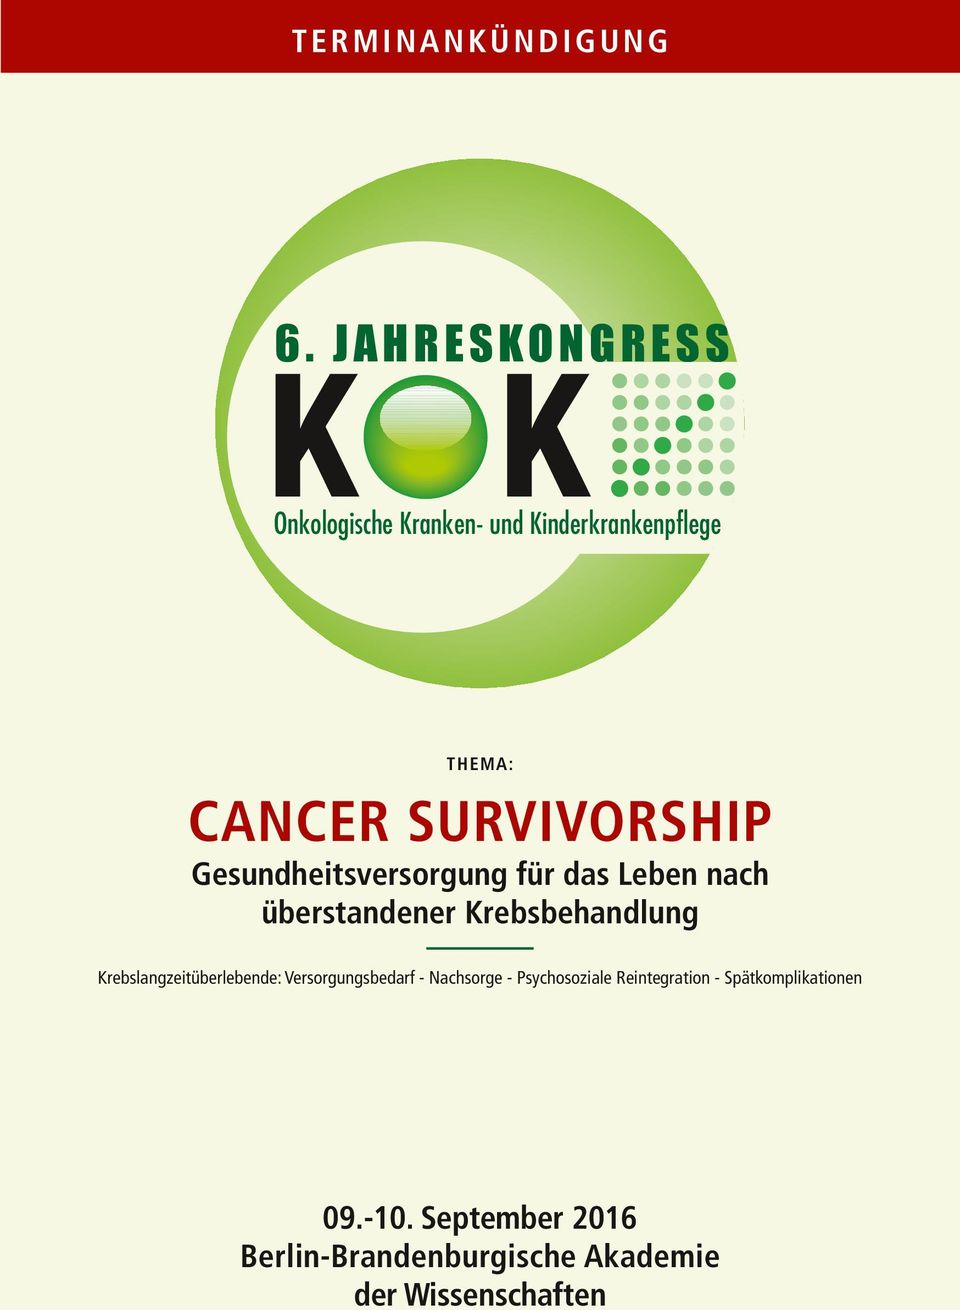 survivorship Gesundheitsversorgung für das Leben nach überstandener Krebsbehandlung